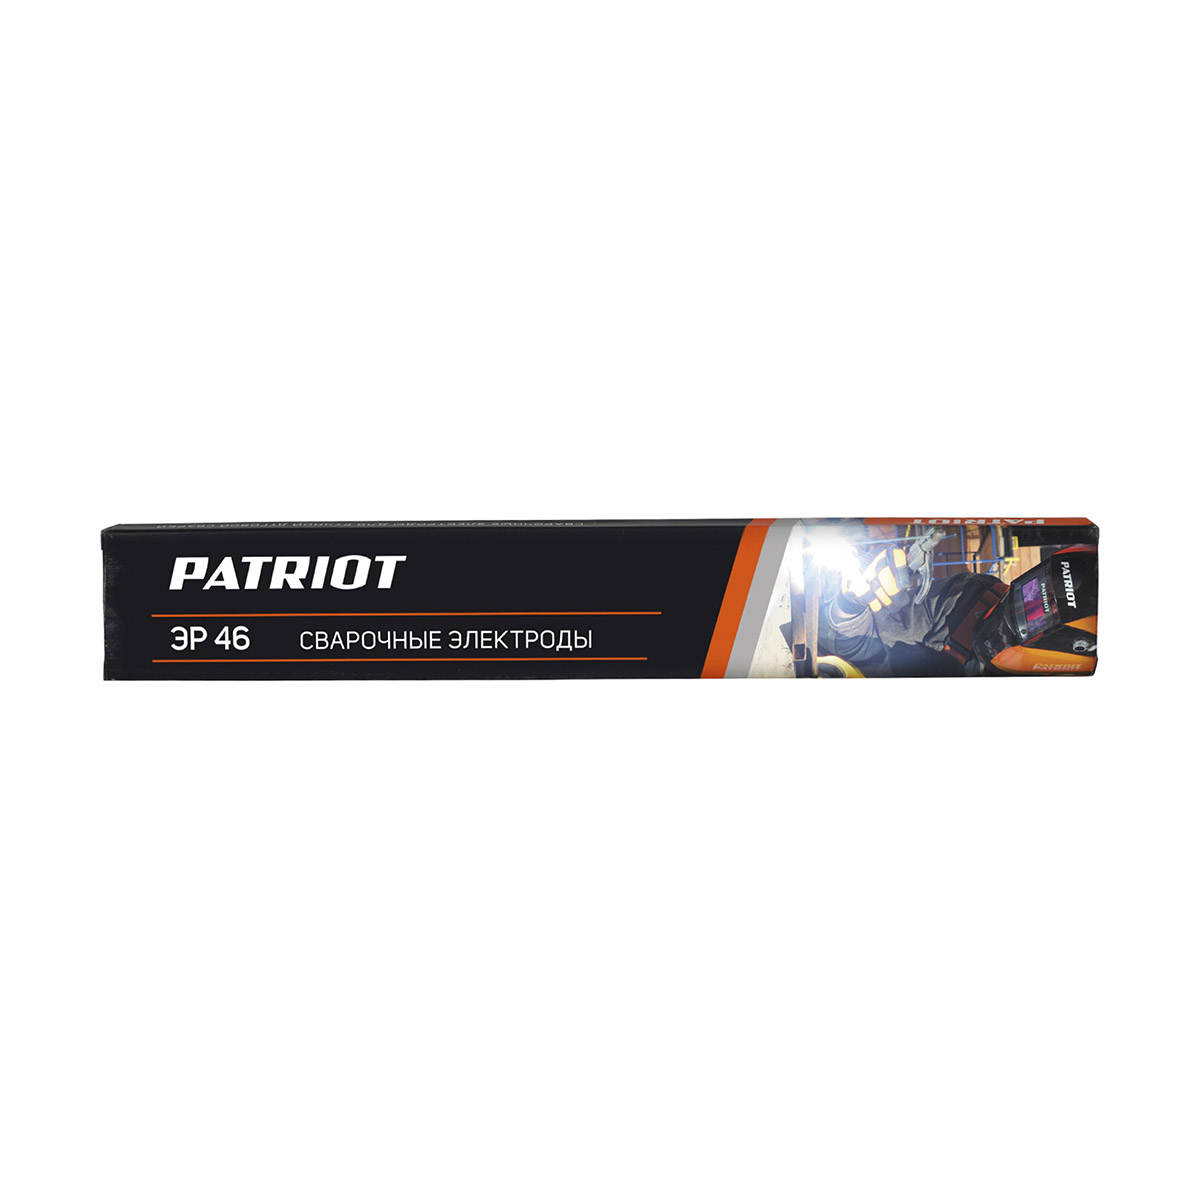 Электроды сварочные Patriot ЭР 46, 3 мм, 5 кг электроды patriot эр 46 4 0mm 1kg 605012026